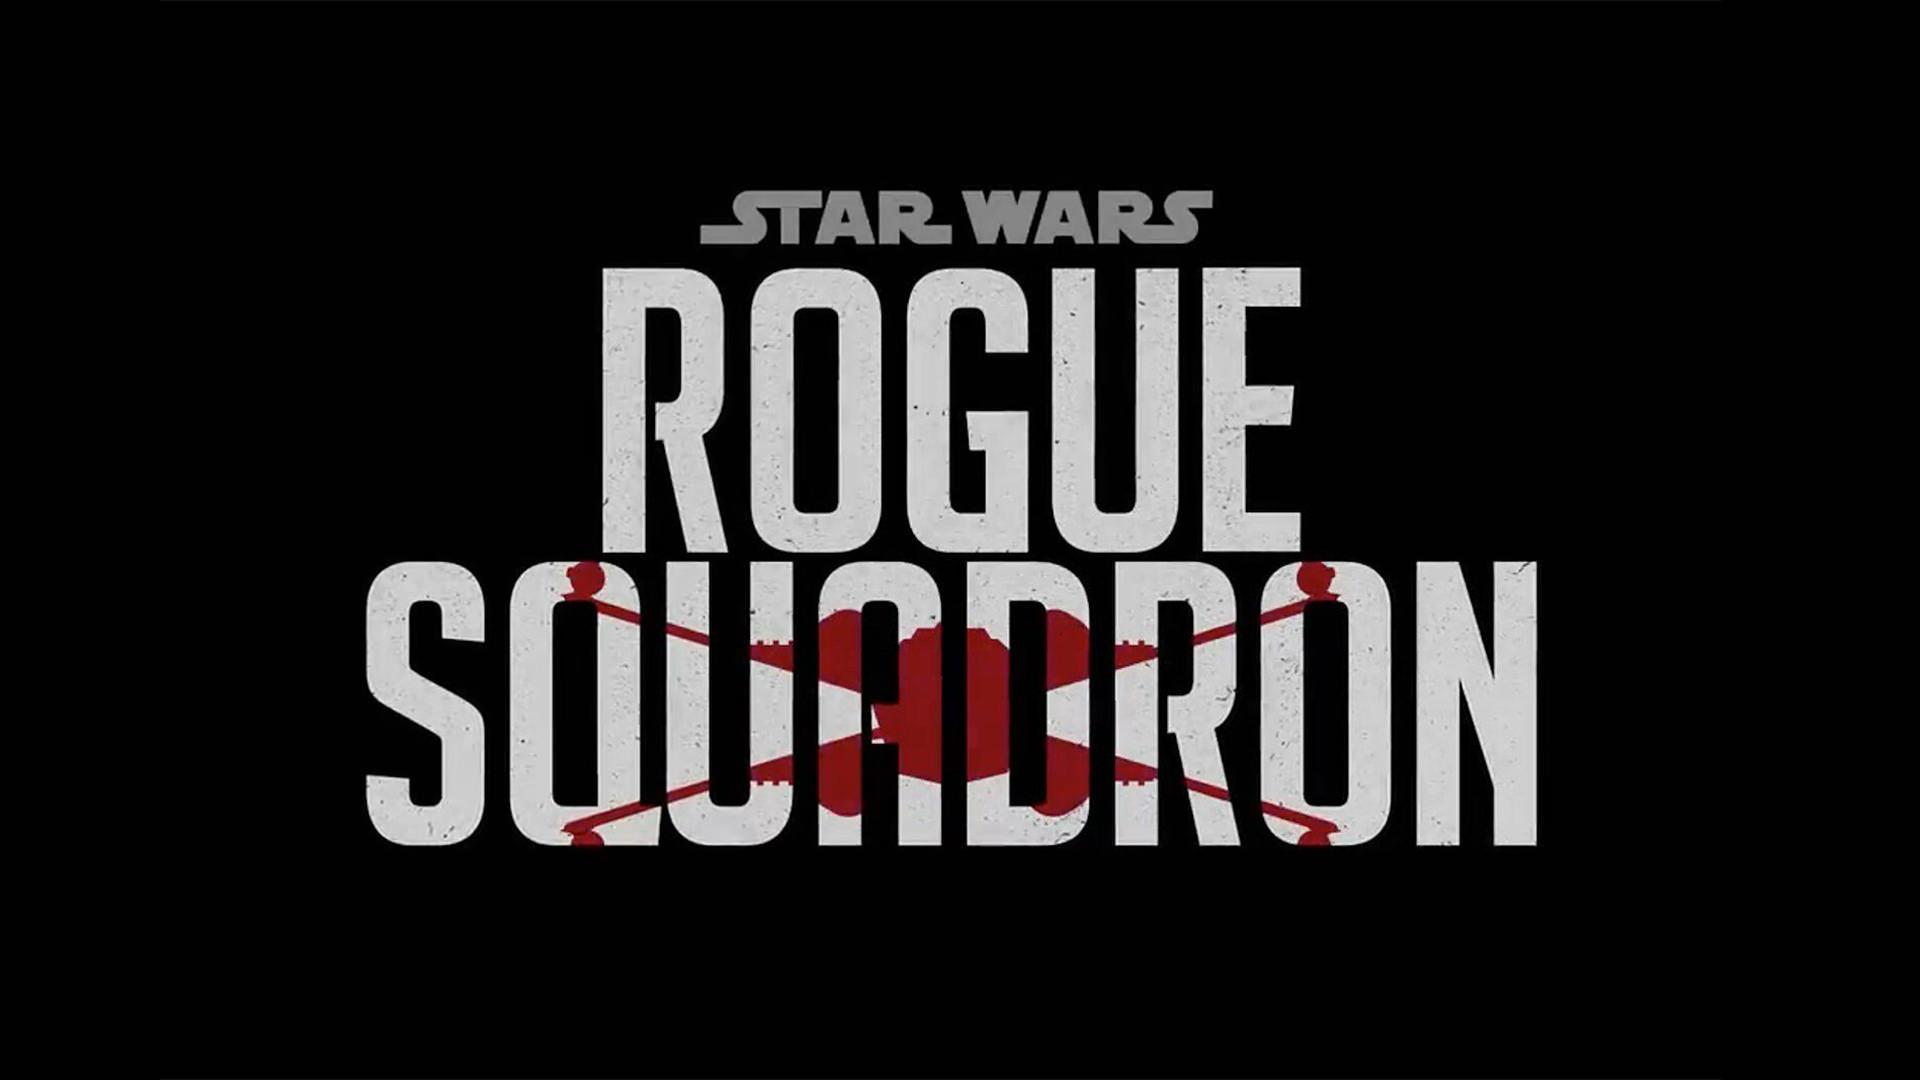 لوگو رسمی فیلم Star Wars: Rogue Squadron / جنگ ستارگان: اسکادران روگ